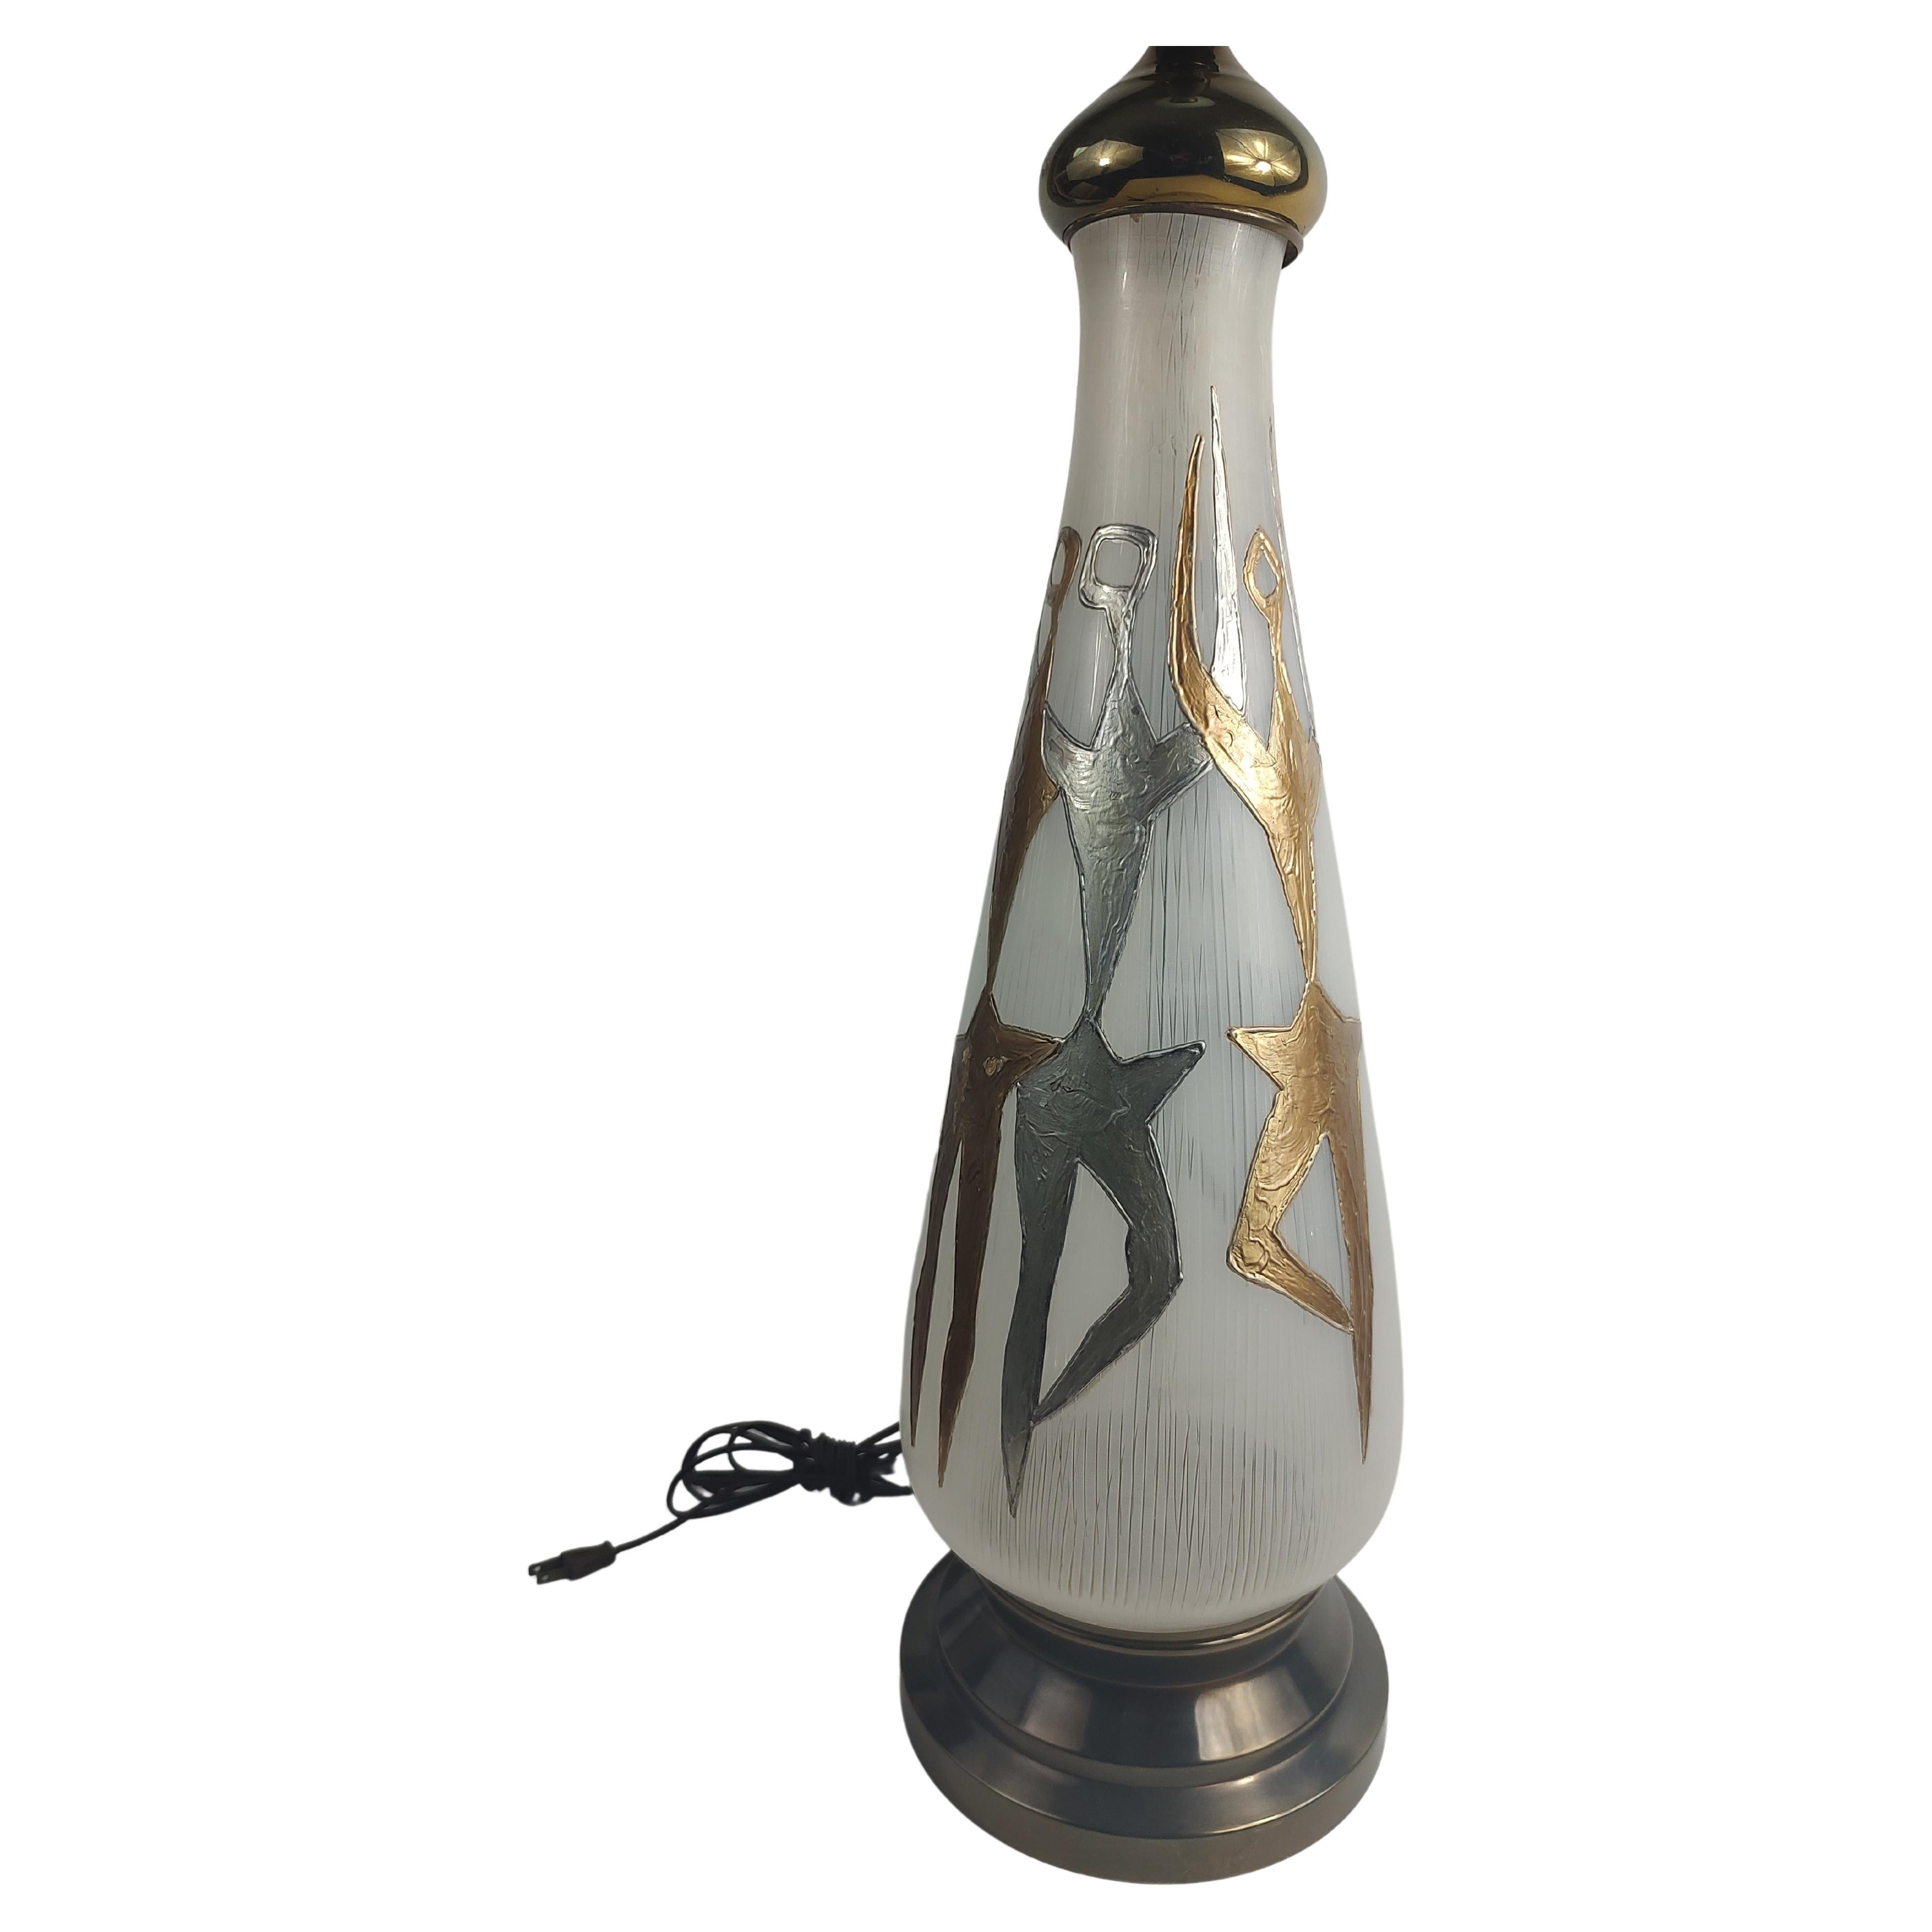 Fabelhafte stilisierte Glastischlampe mit modernen Tänzern in Gold und Silber. Der Milchglasdiffusor sitzt auf einem Messingstiel. In ausgezeichnetem Vintage-Zustand mit minimalen Gebrauchsspuren. Inklusive des abgebildeten Schirms, der intakt, aber